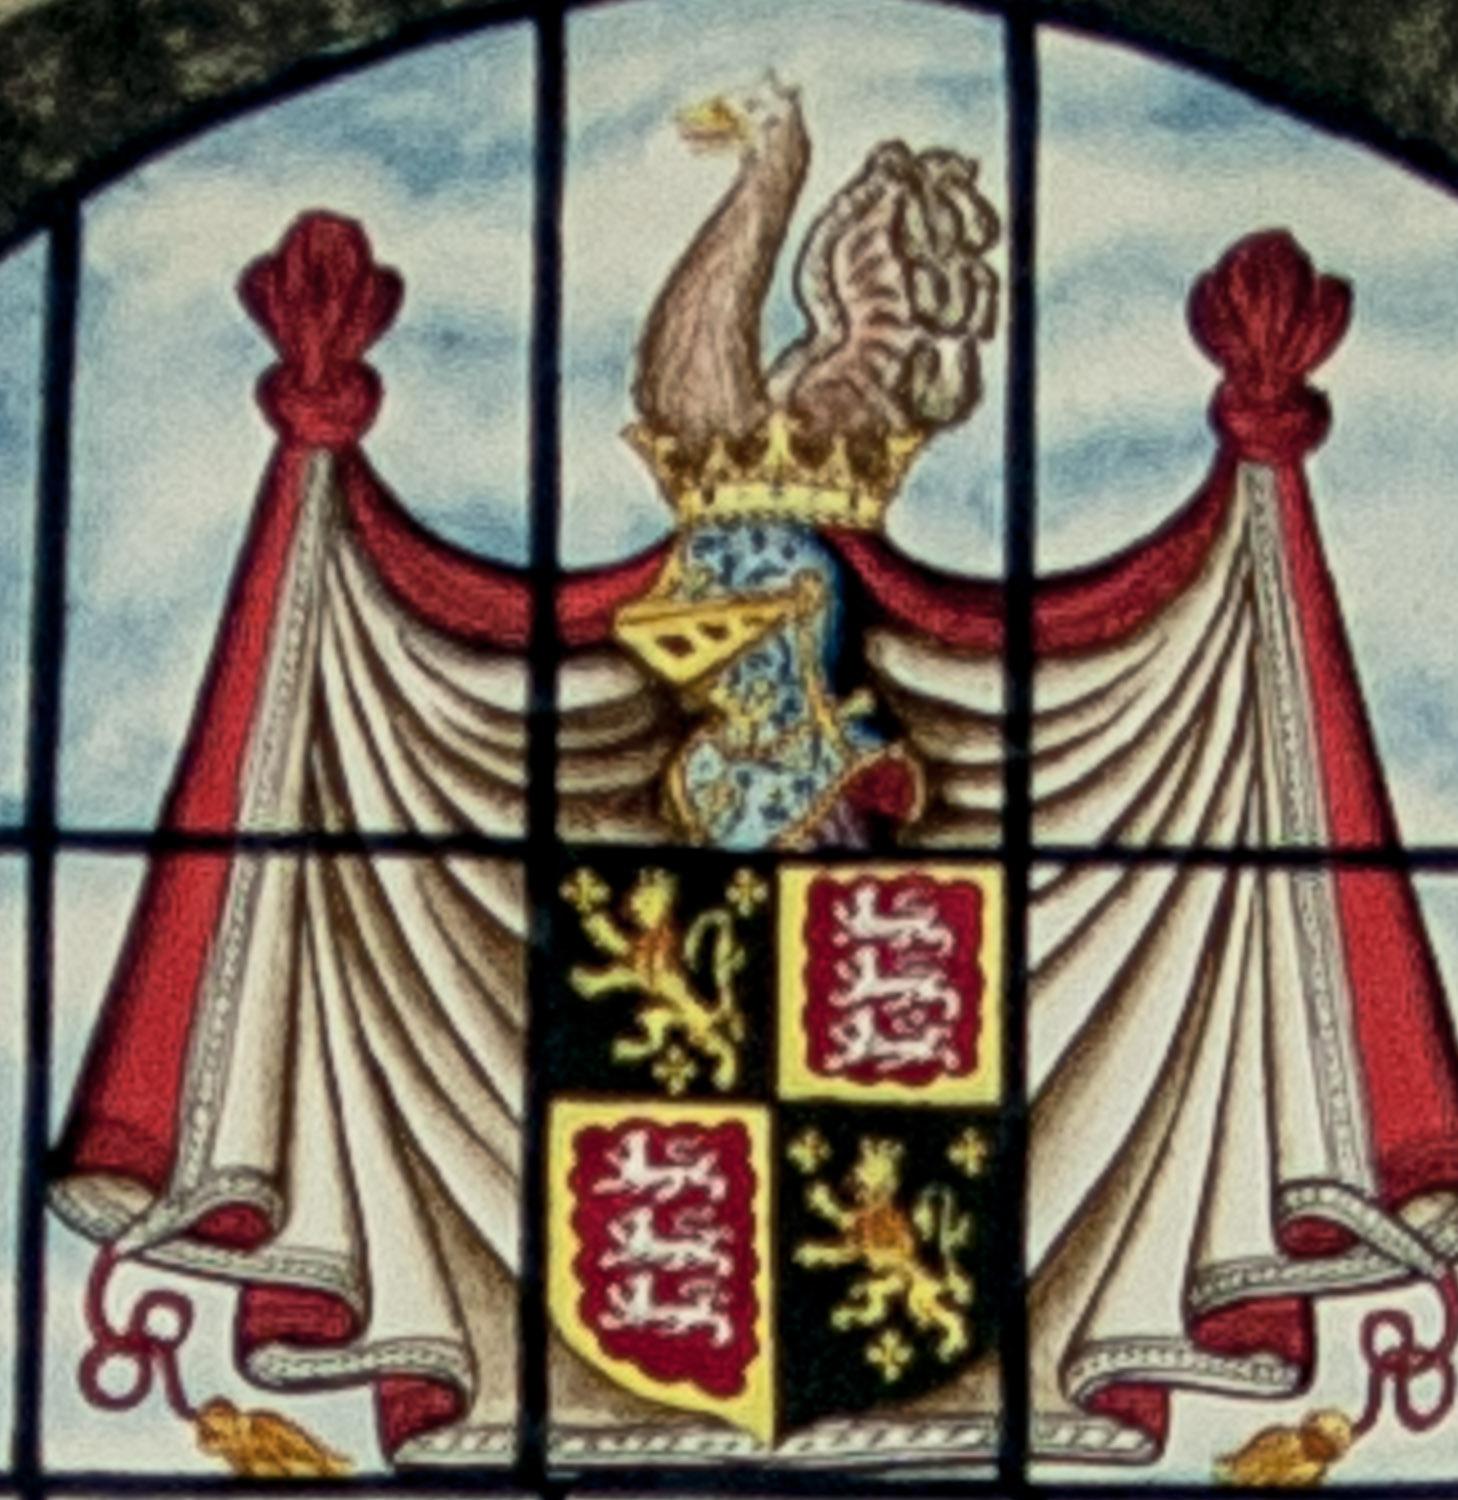 Gravure originale à l'aquatinte, coloriée à la main, d'un vitrail de la cathédrale Christ Church, Oxford, représentant l'évêque Robert King D. D., le dernier abbé d'Osney et le premier évêque d'Oxford, représenté ici devant la cathédrale d'Oxford.